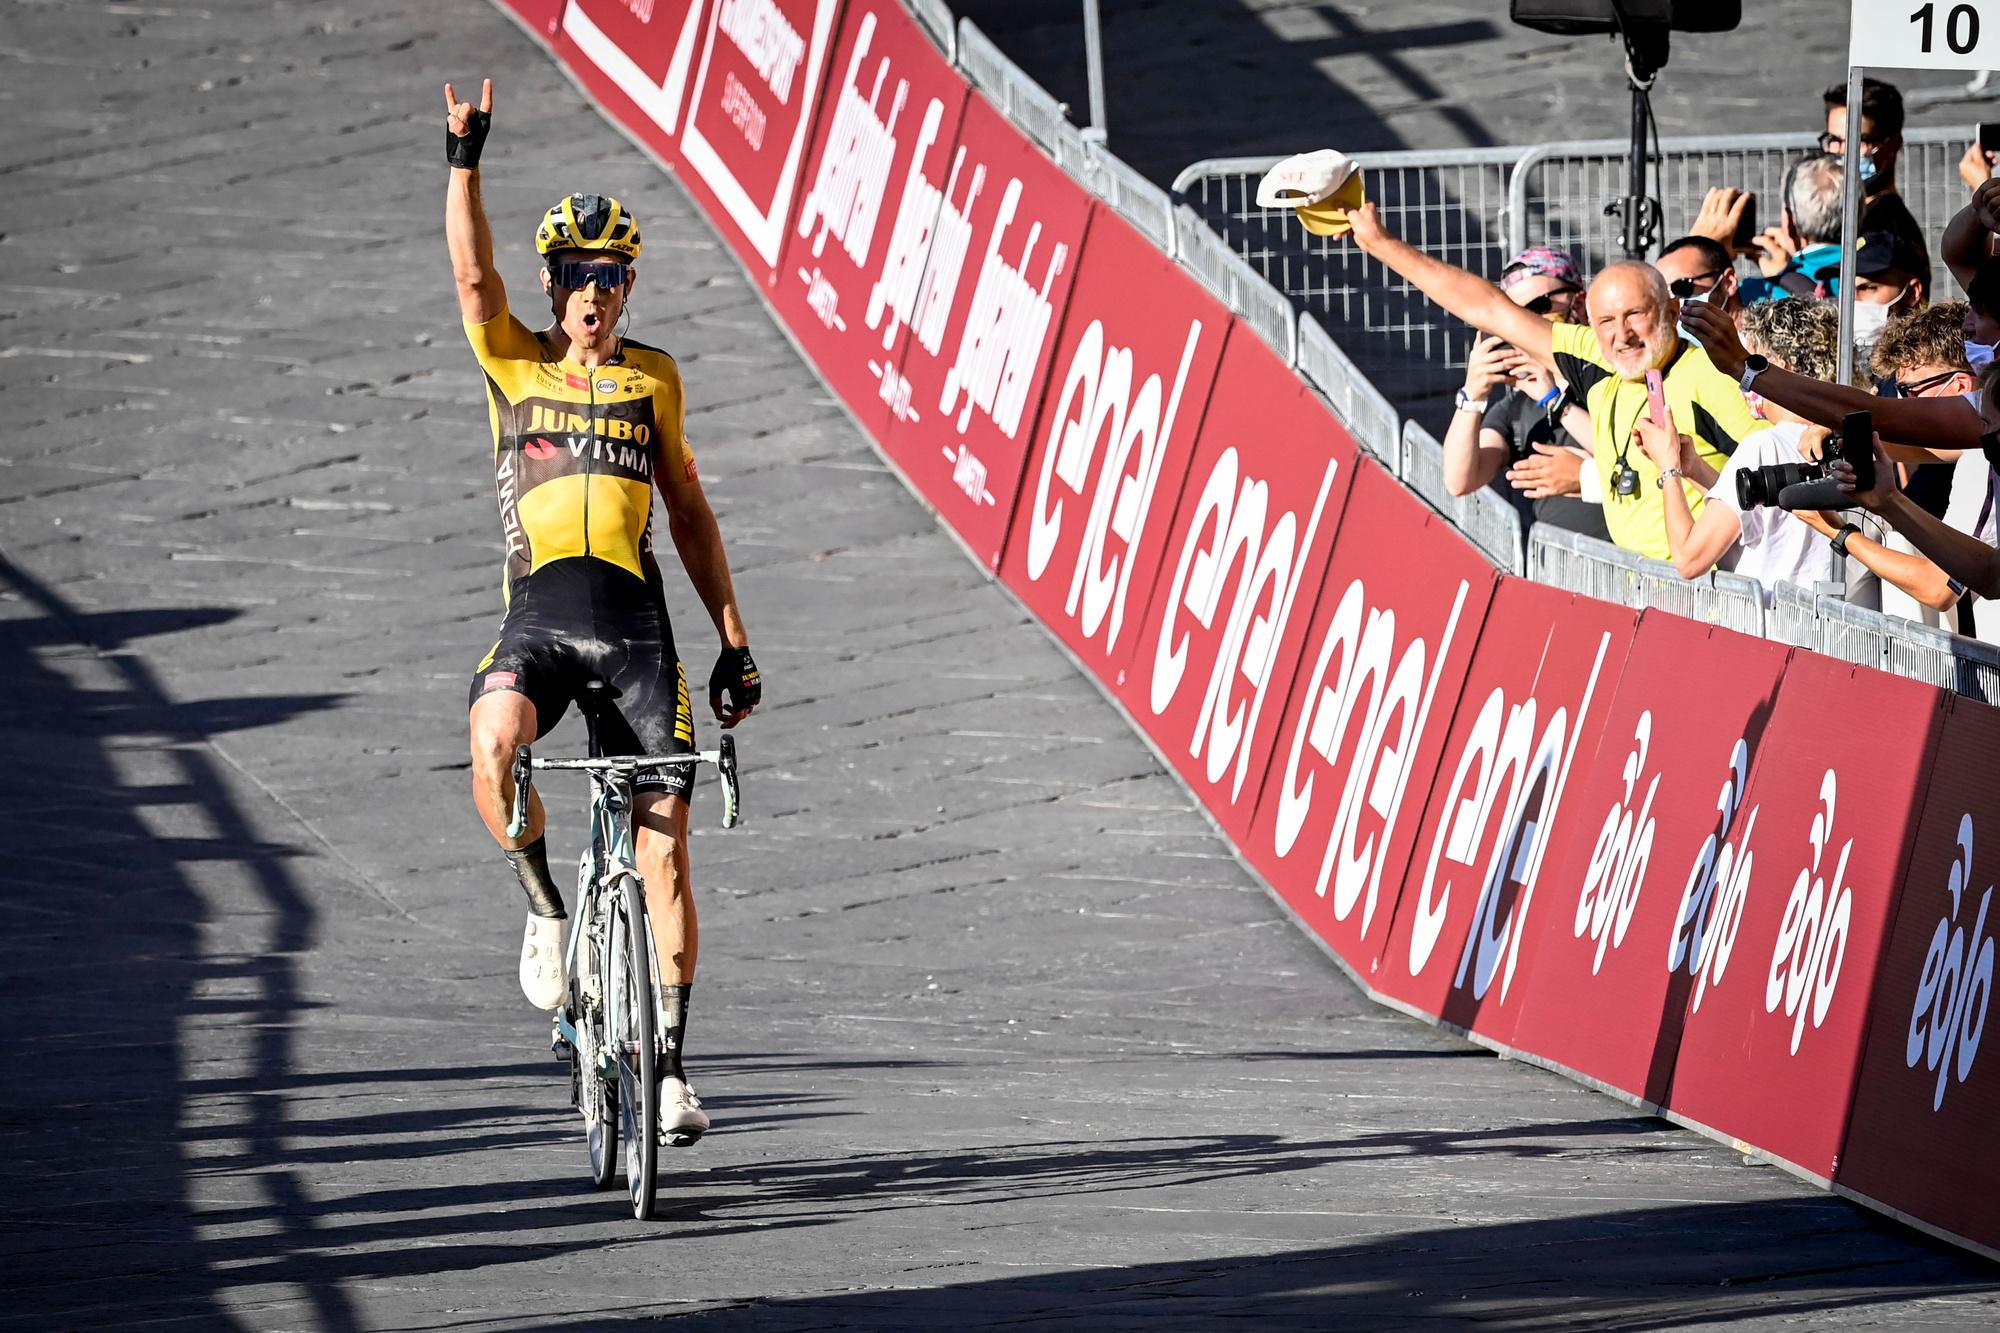 En août 2020, après l'interruption pandémique, Wout Van Aert marque son retour au plus haut niveau après sa grave chute lors du Tour de France 2019. Il remportera Milan-San Remo au sprint contre Julian Alaphilippe une semaine plus tard.